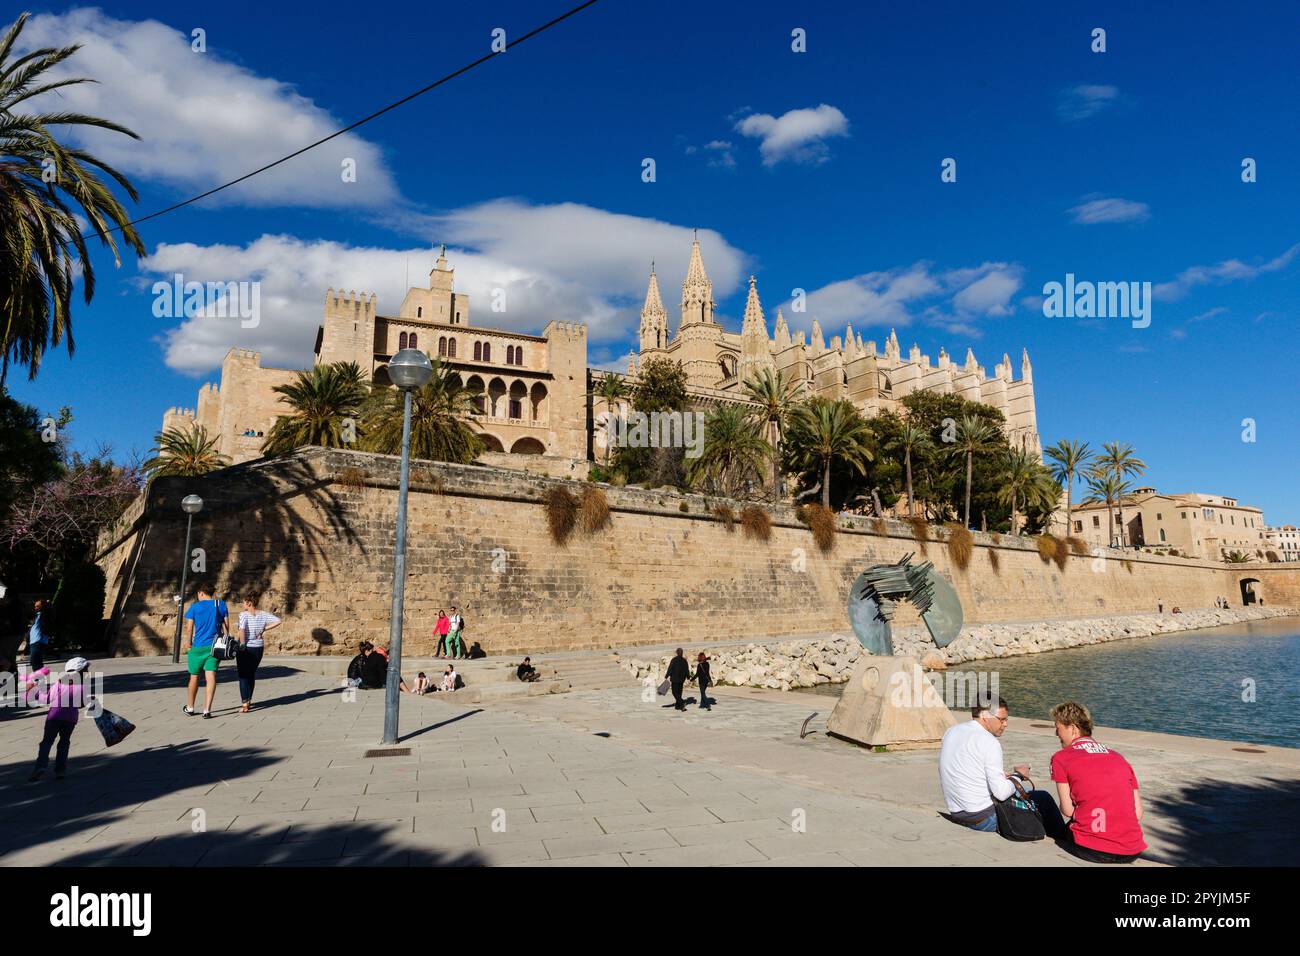 parque del Mar y Catedral de Mallorca , siglo  XIII, Monumento Histórico-artístico, Palma, mallorca, islas baleares, españa, europa Stock Photo